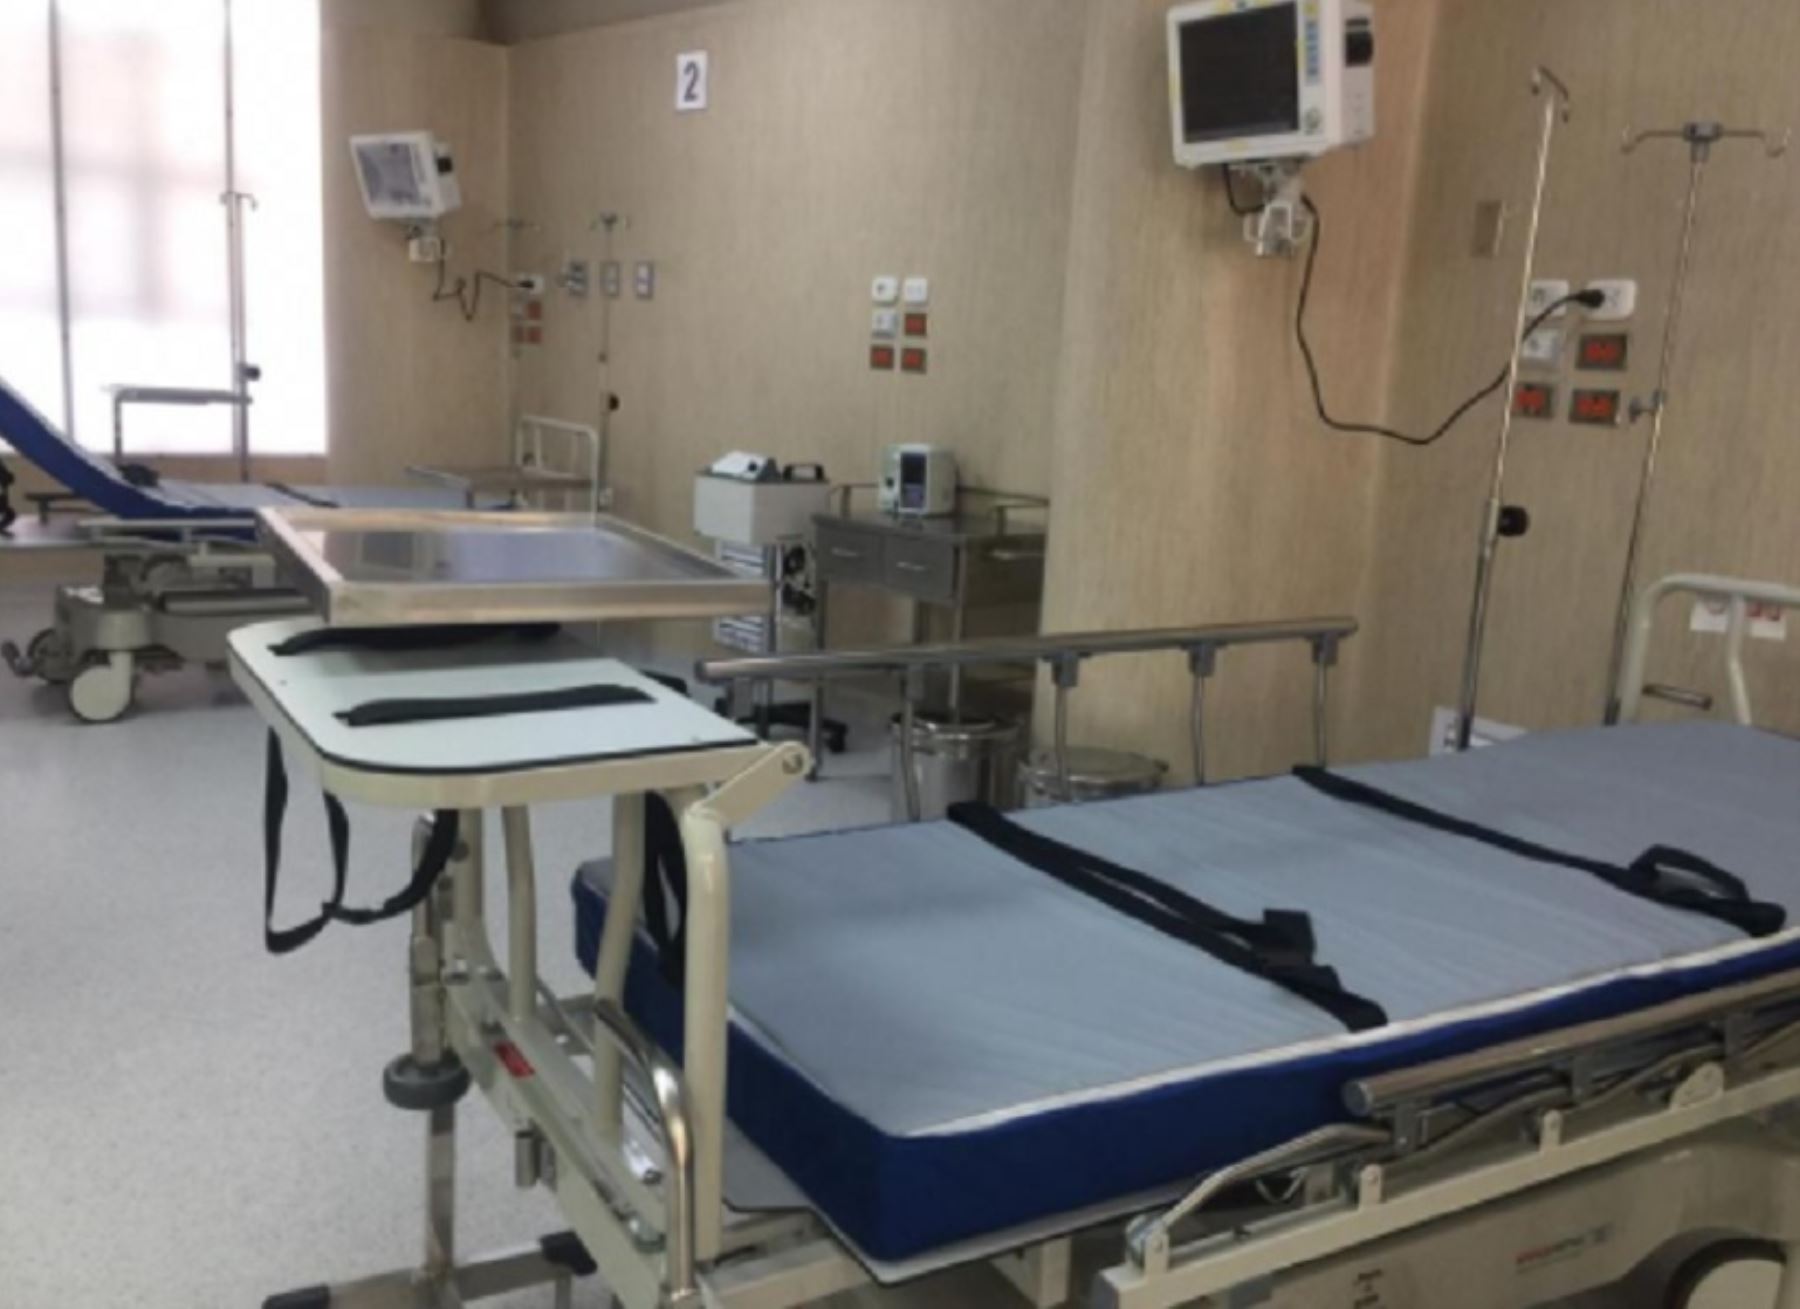 Cuatro camas para recibir pacientes con el covid-19 se sumaron a la Unidad de Cuidados Intensivos (UCI) del Hospital Honorio Delgado, designado como Hospital Covid-19, elevándose a 14 el número de camas para pacientes graves con la enfermedad.